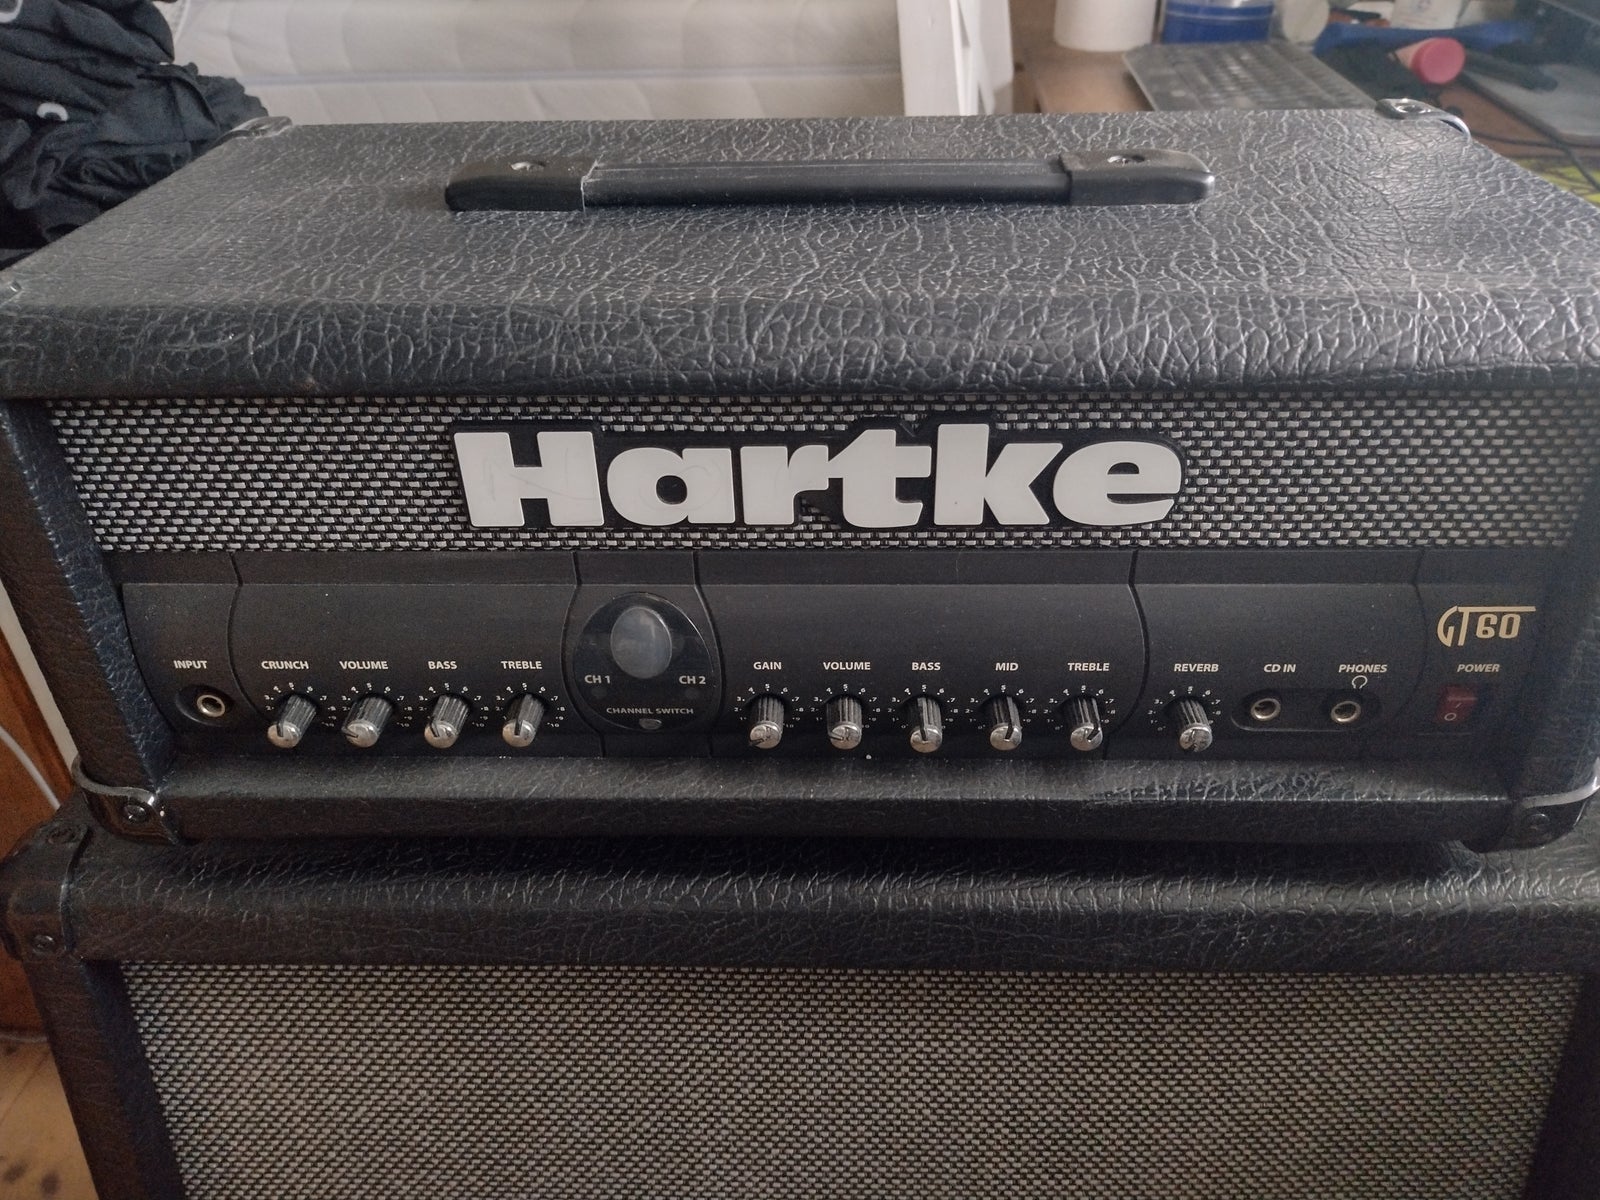 Guitarforstærker, Hartke GT 60 